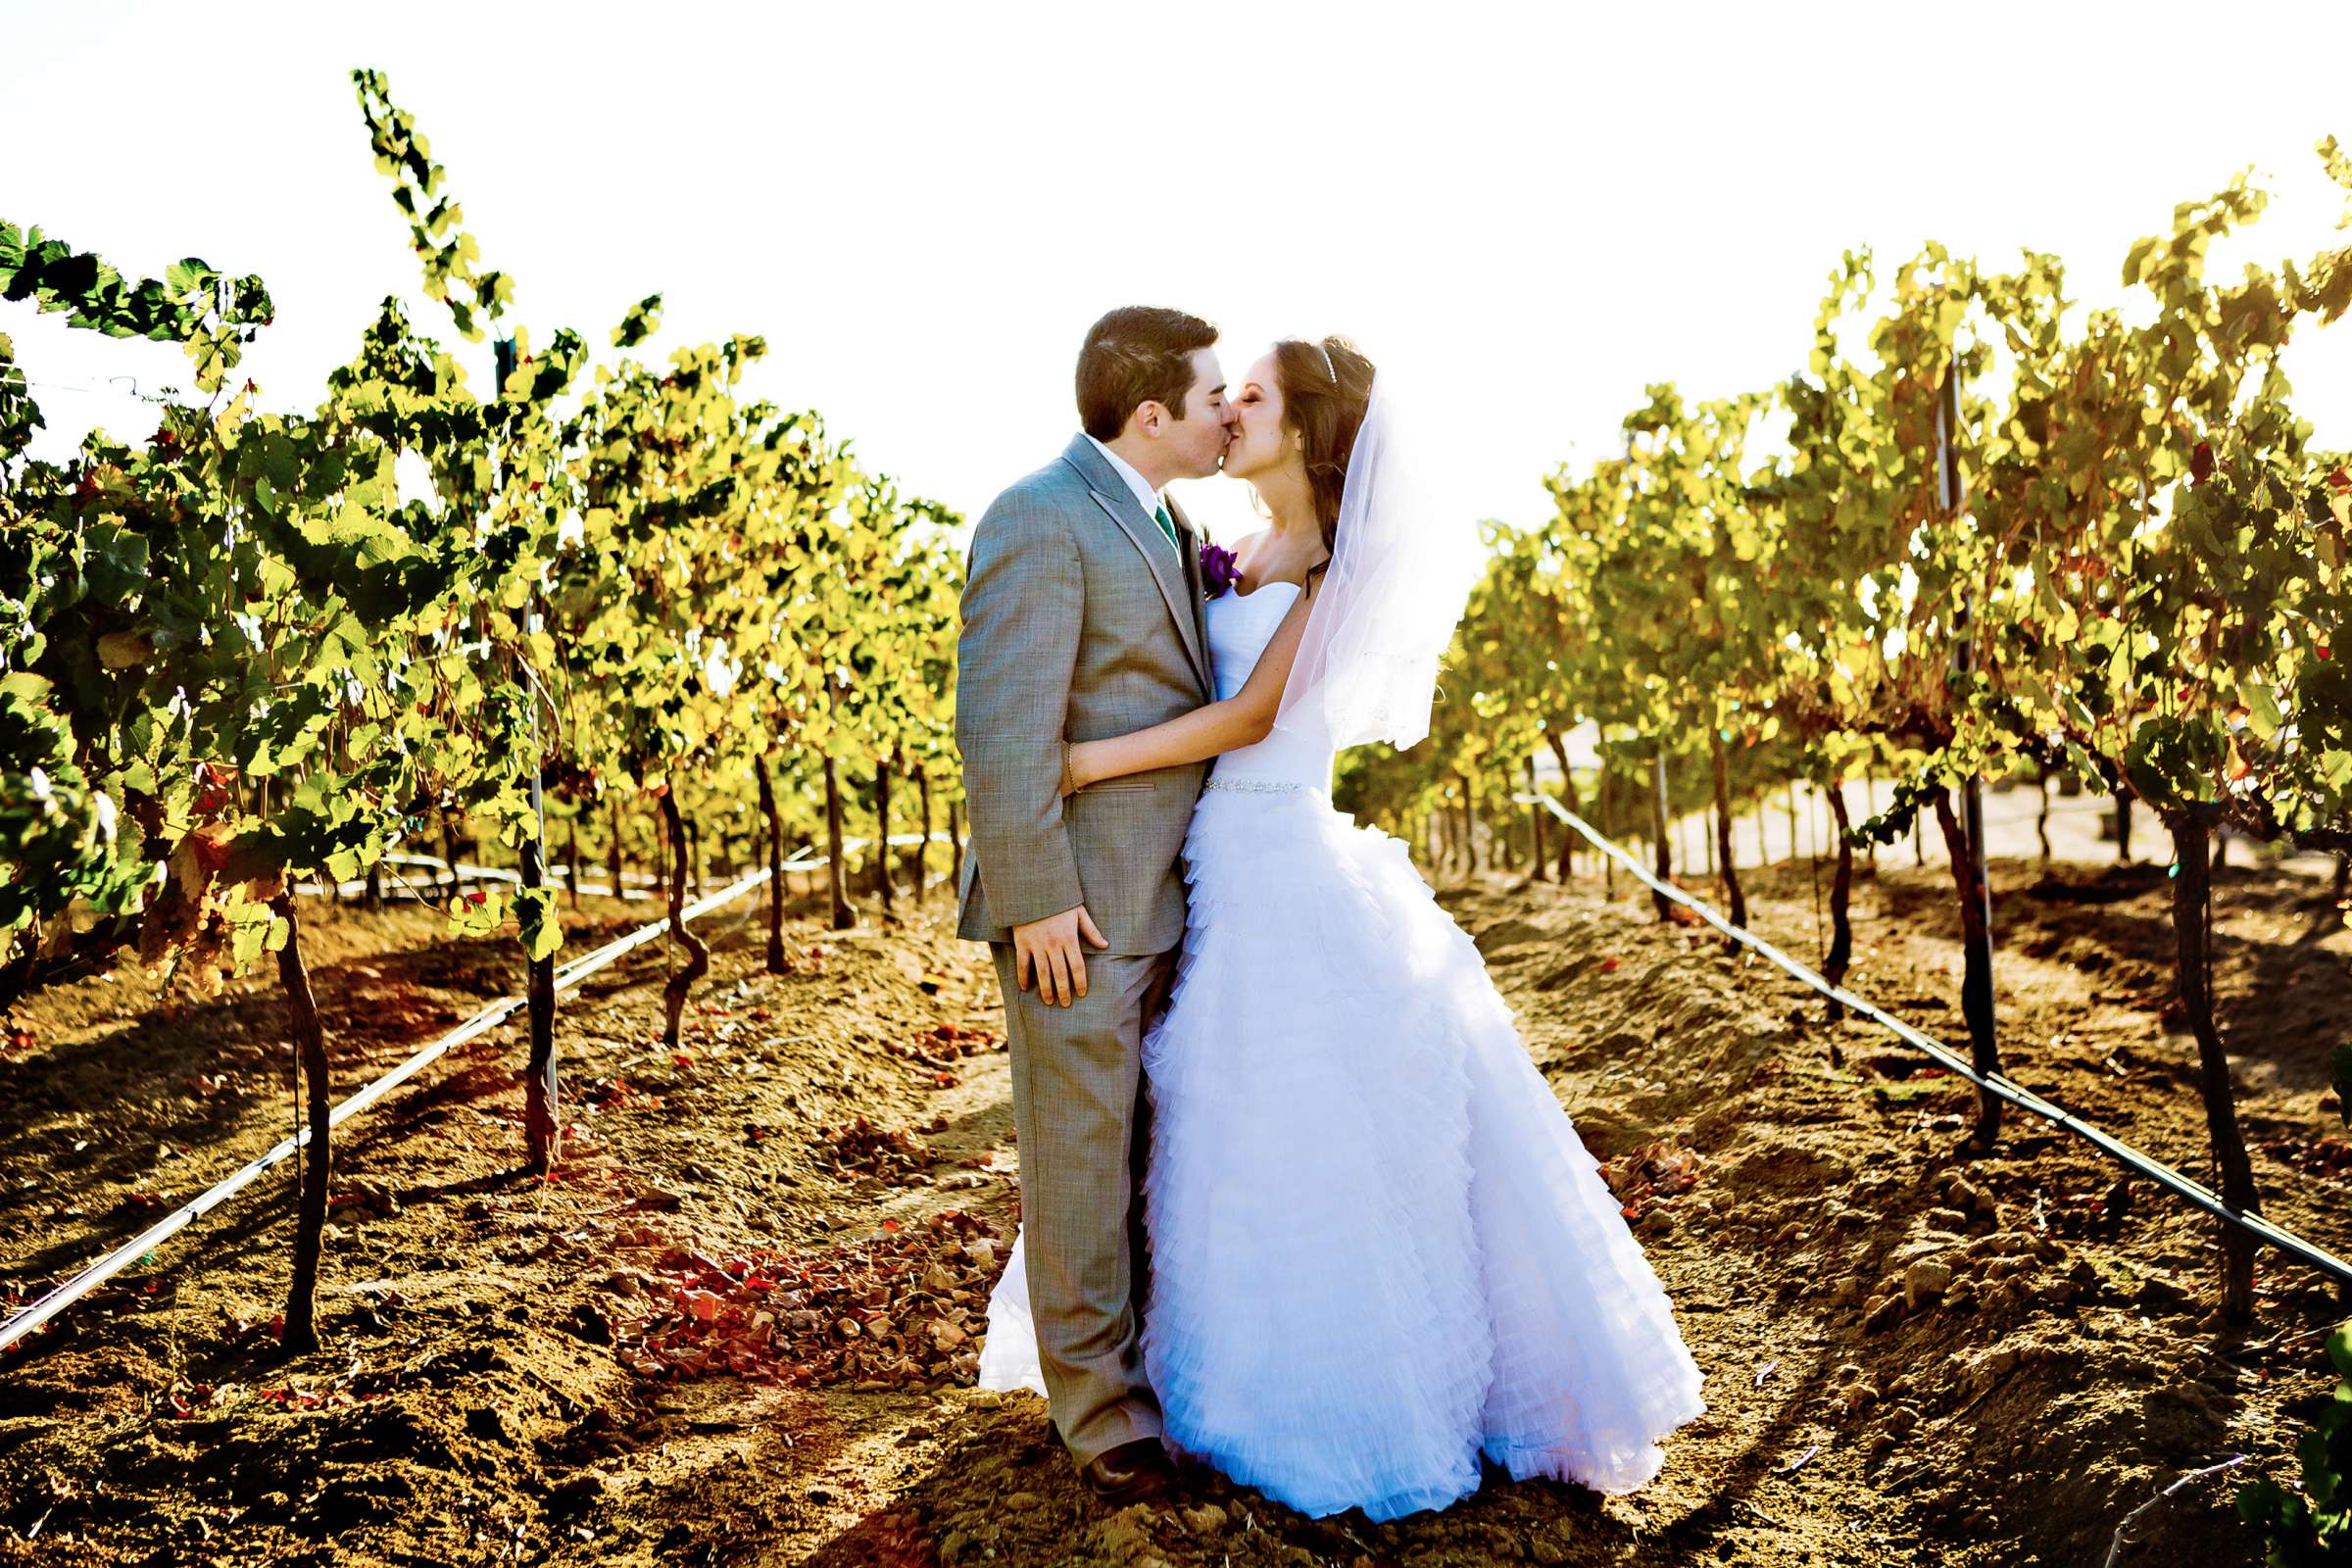 Mount Palomar Winery Wedding, Brandi and Jason Wedding Photo #321676 by True Photography